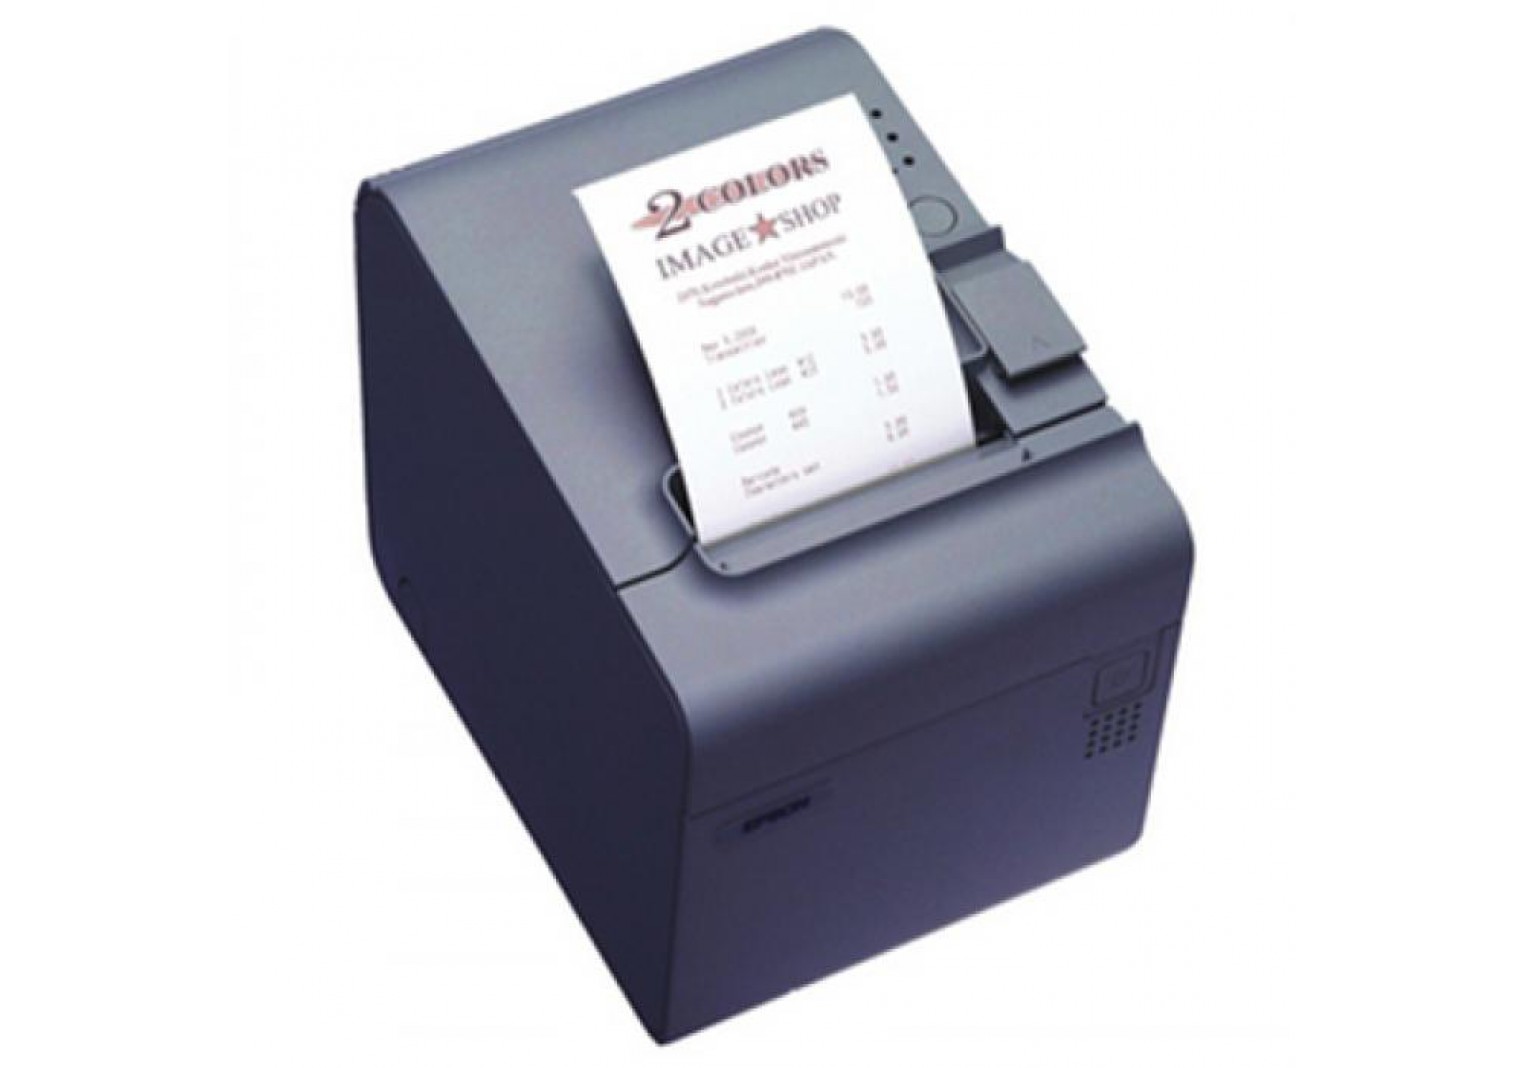 เครื่องพิมพ์ใบเสร็จ Epson TM-T90 Slip Printer